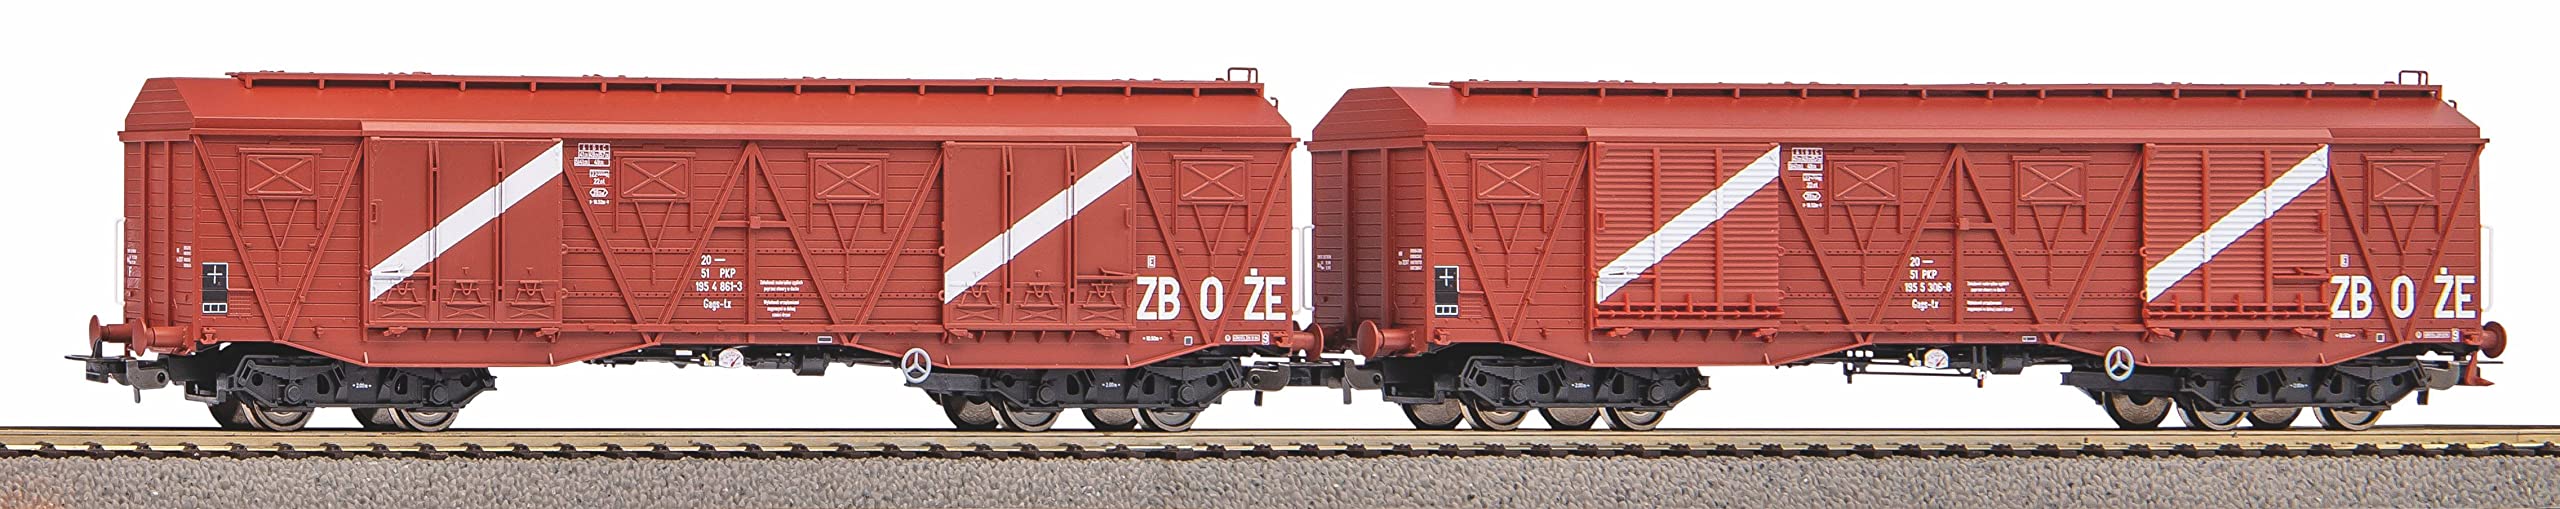 Piko 58233 2er Set GED. Güterwagen 401Ka Gags-tx PKP Ep.IV, rotbraun